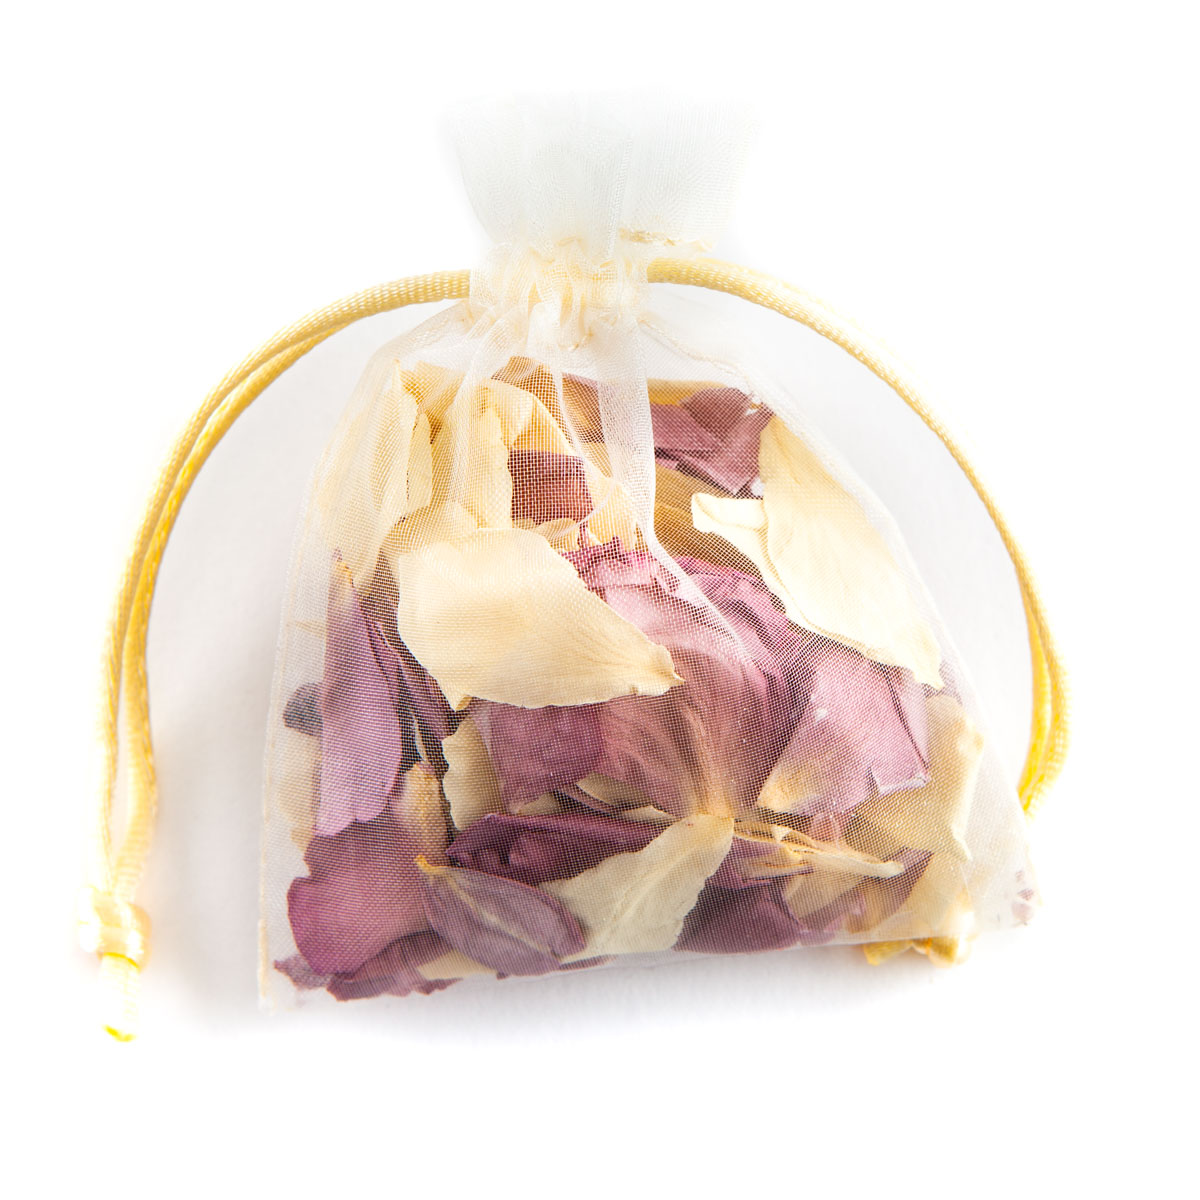 Biodegradable Confetti - Lilac & Cream Rose Petals - Petal Bag